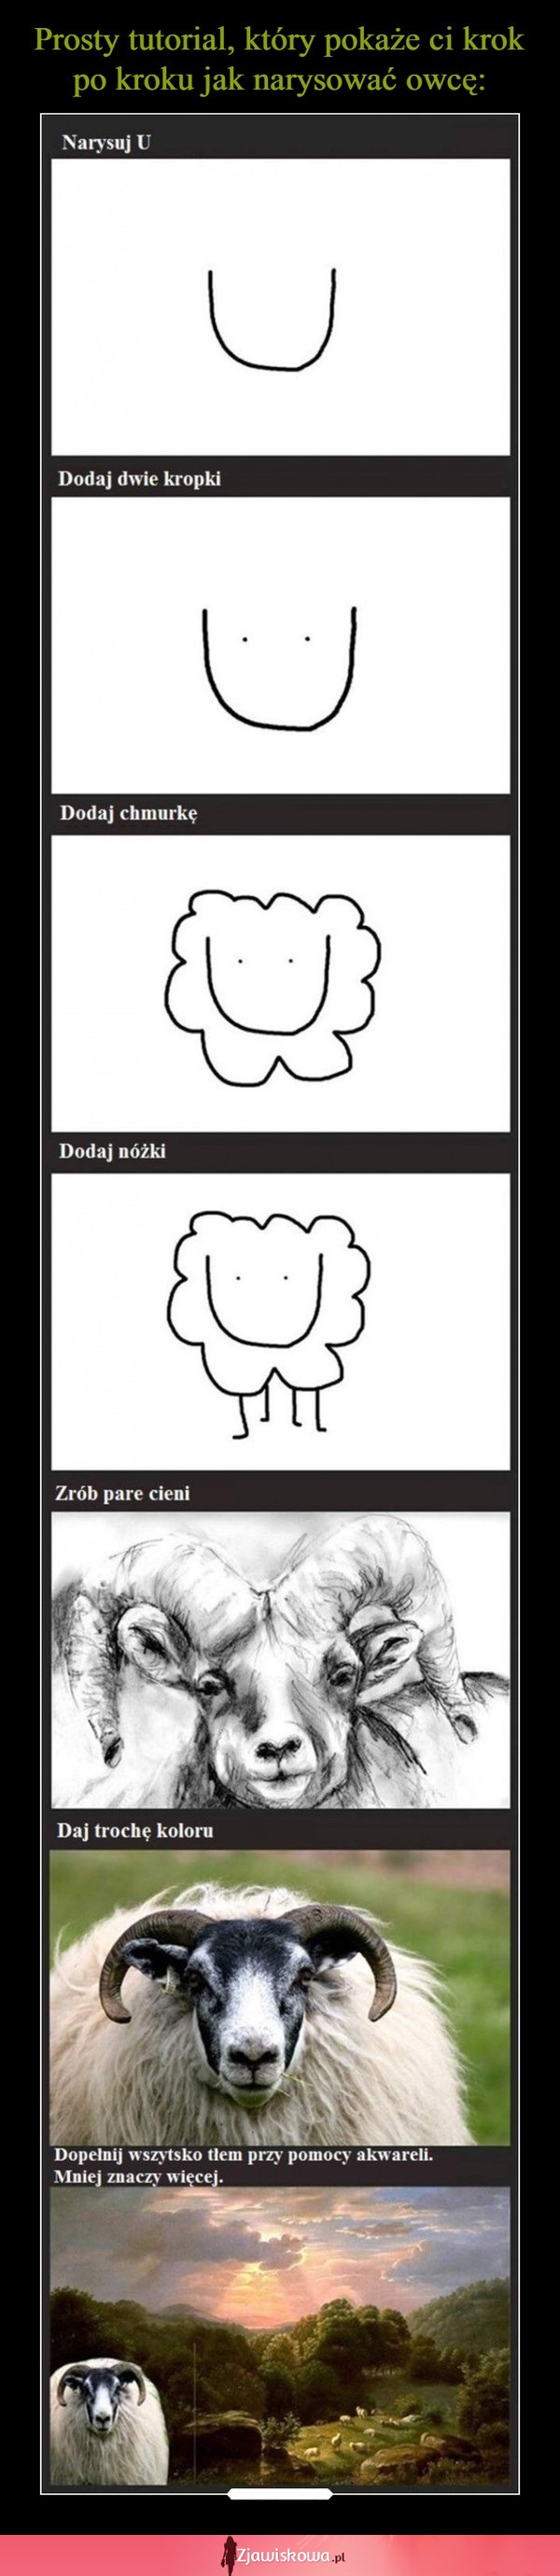 Prosty tutorial, który pokaże Ci jak narysować owcę... To takie proste!